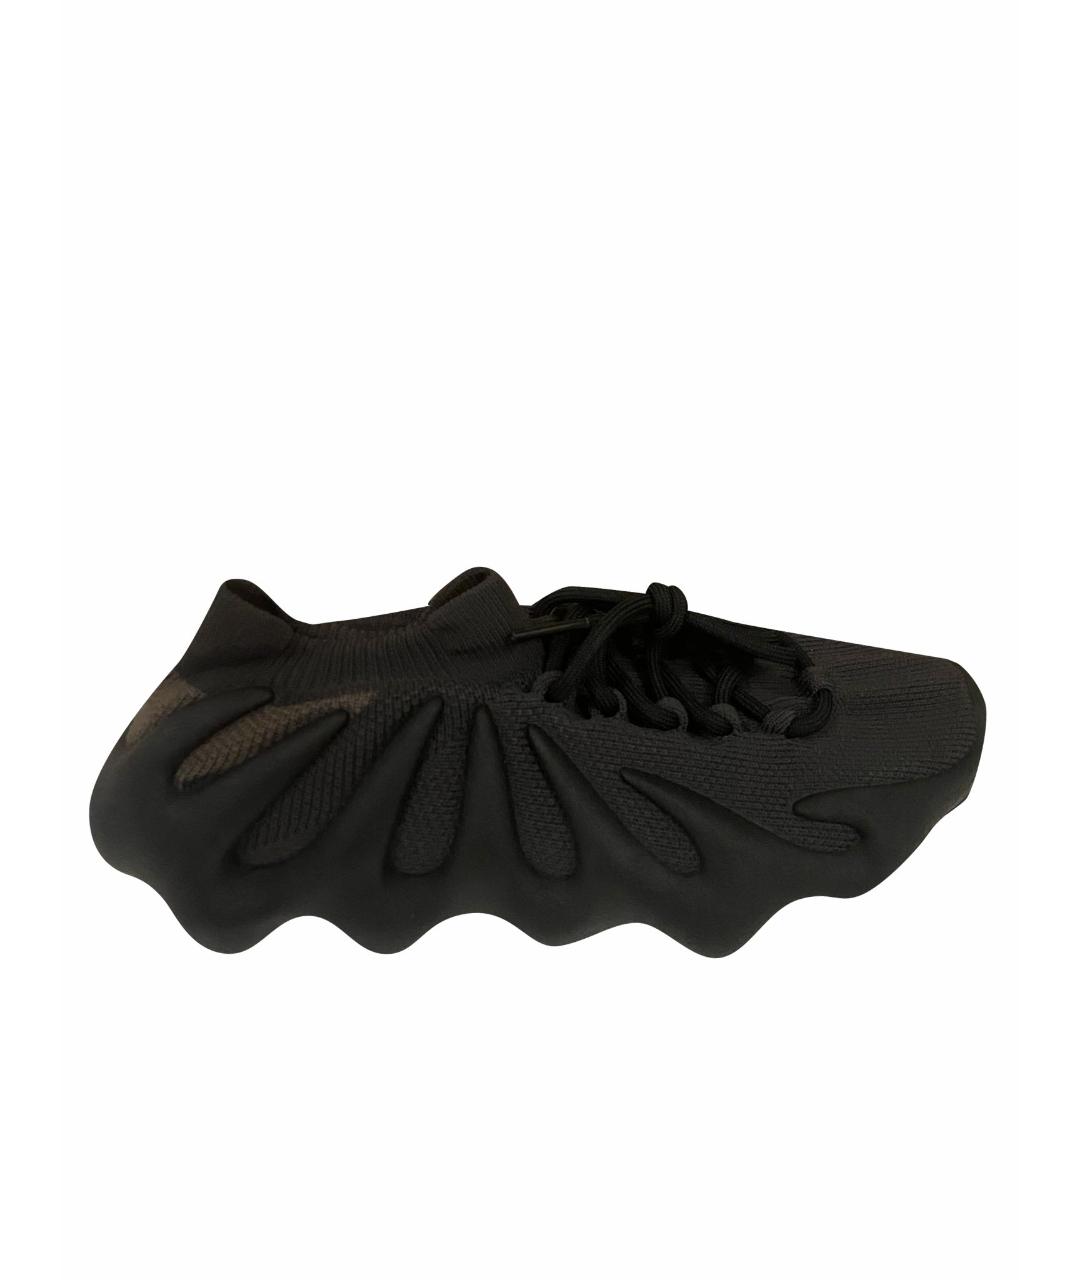 ADIDAS YEEZY Черные текстильные низкие кроссовки / кеды, фото 1